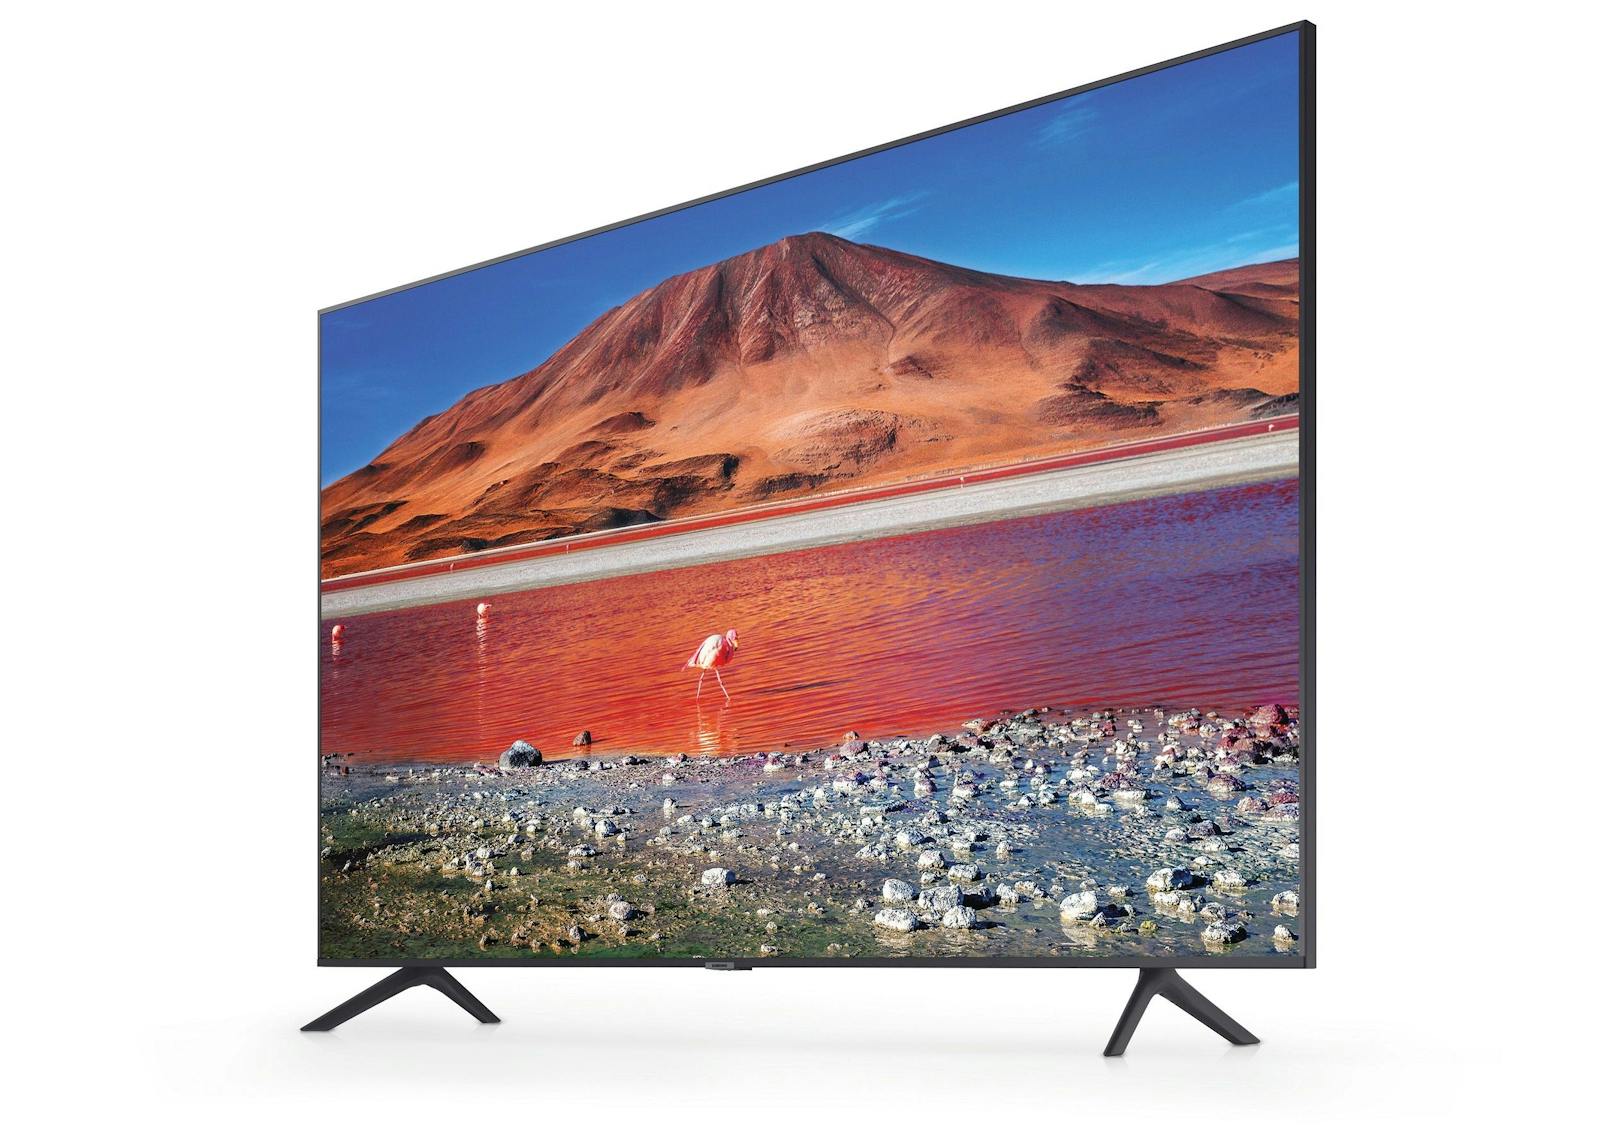 Der 43 Zoll große Ultra HD Smart TV 43TU7170 von Samsung.